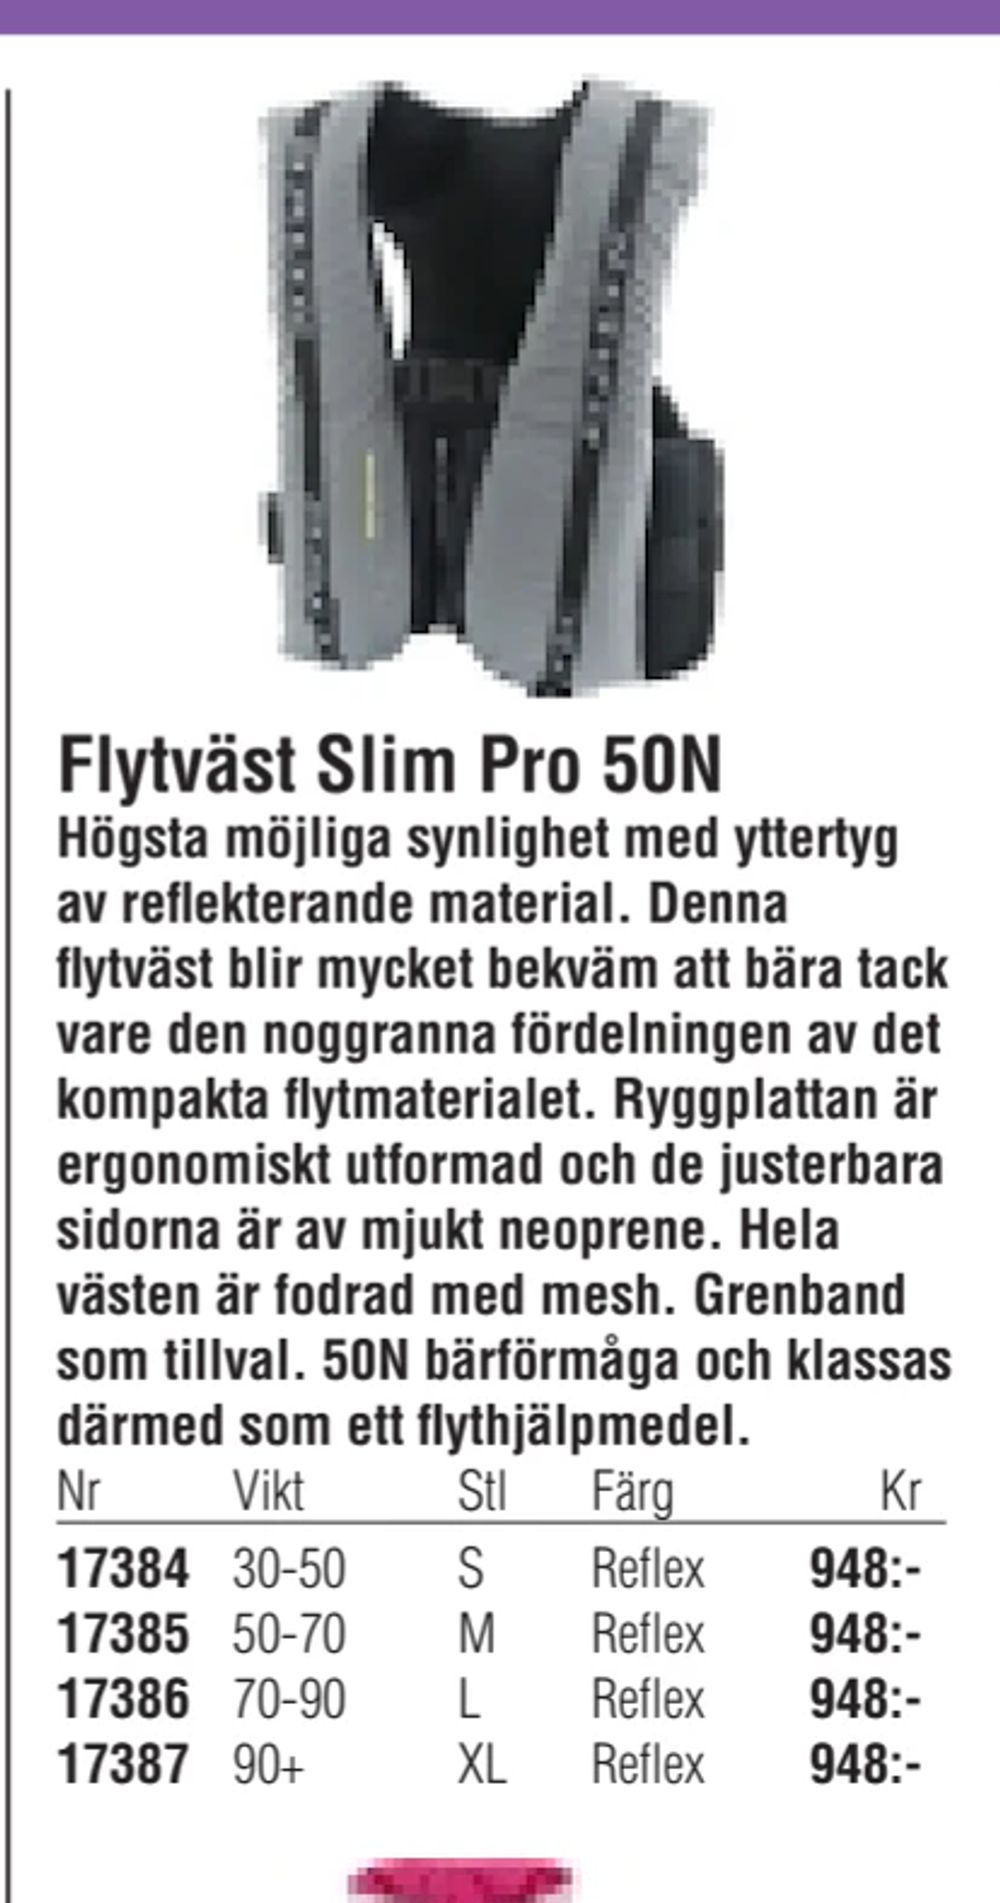 Erbjudanden på Flytväst Slim Pro 50N från Erlandsons Brygga för 948 kr